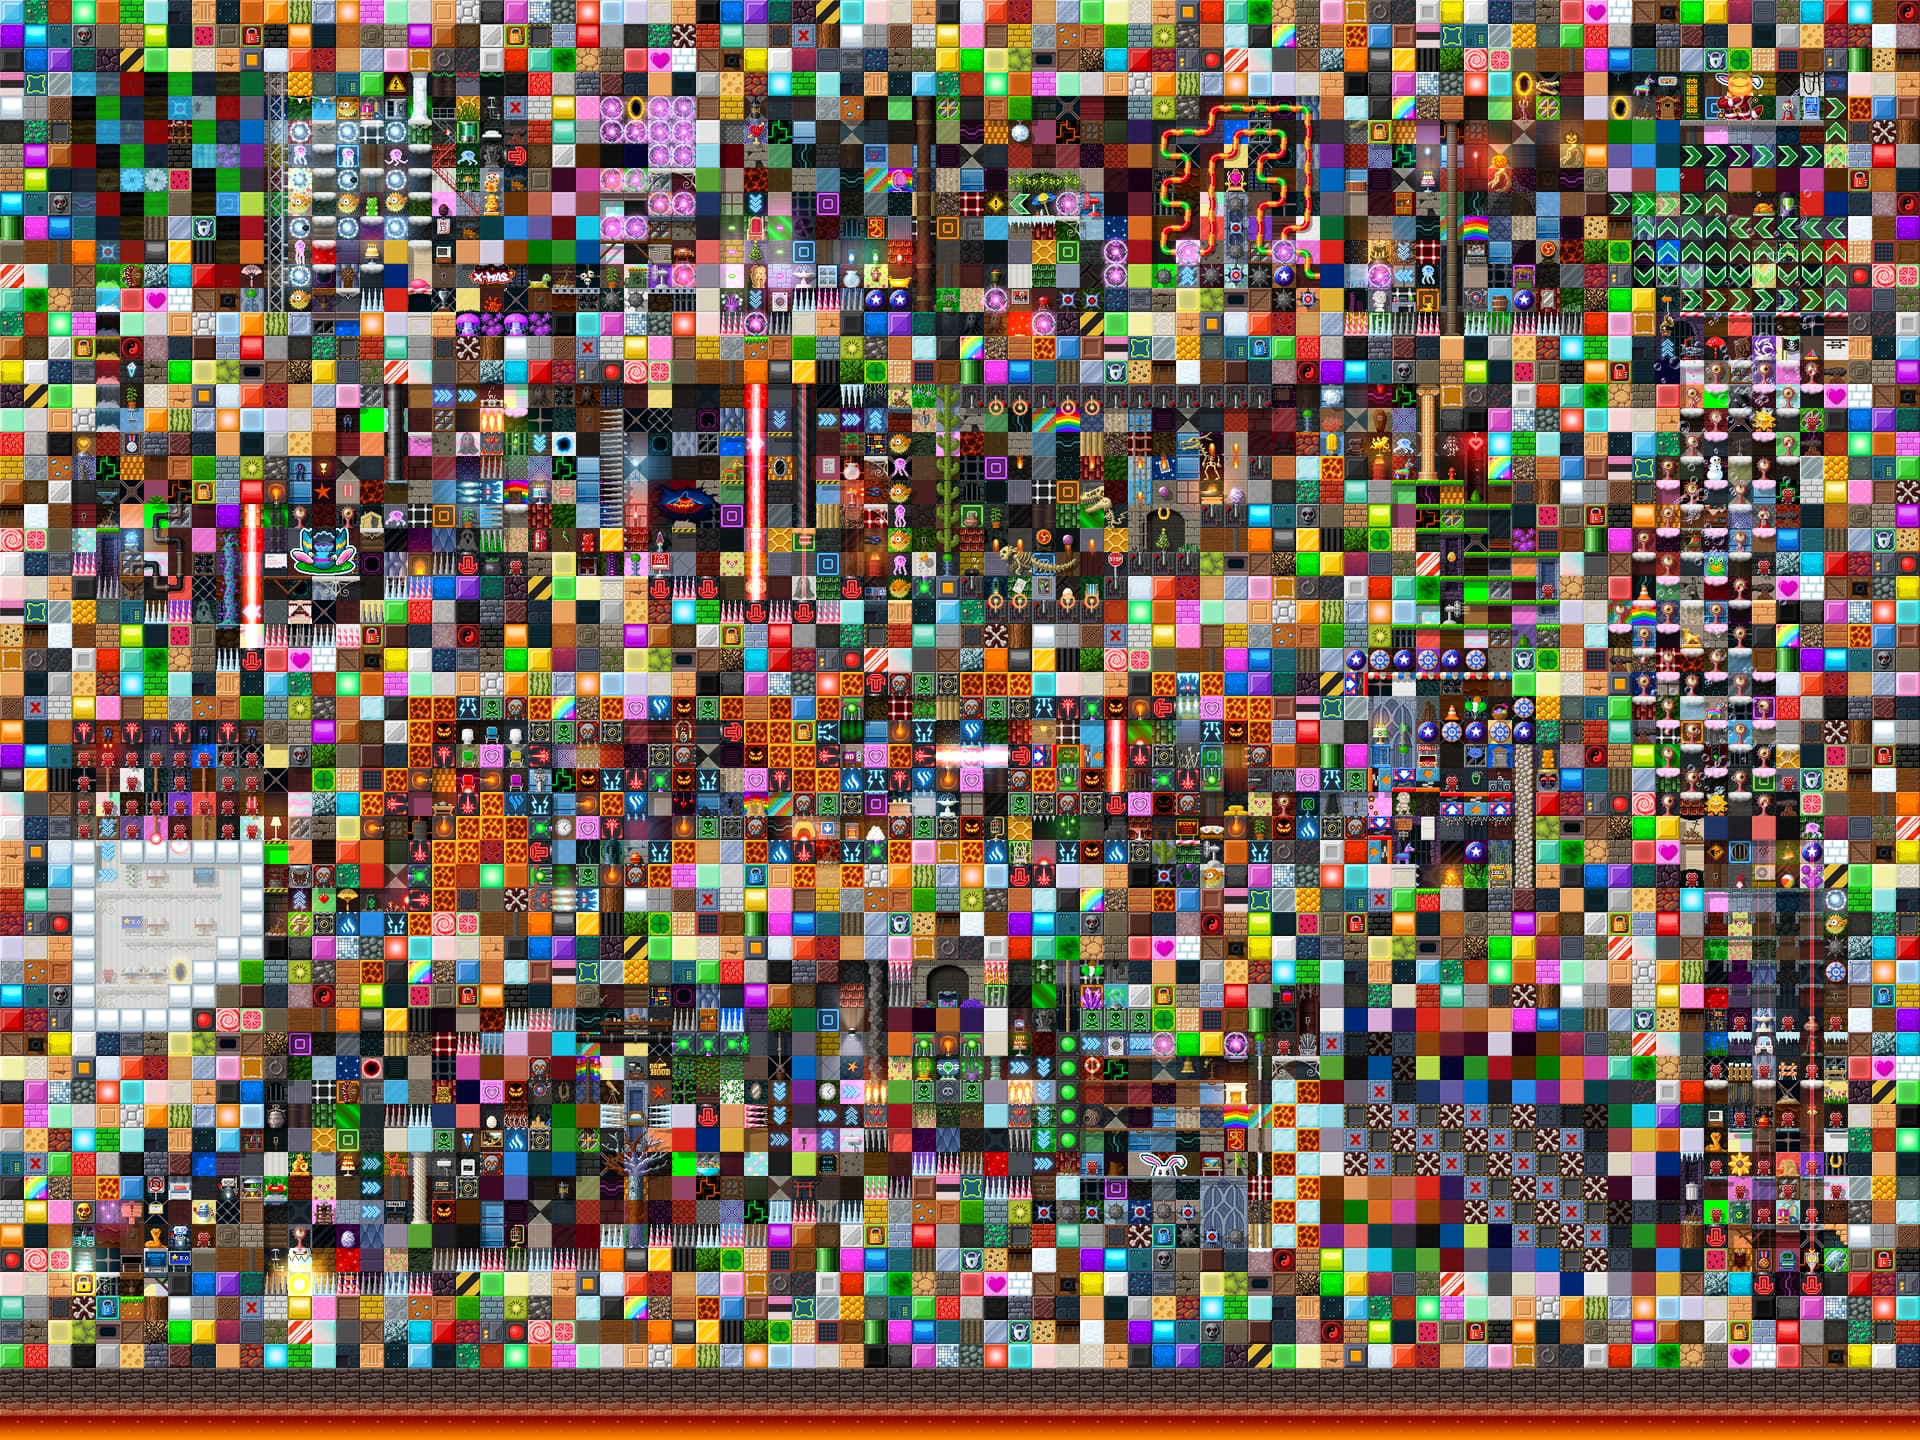 minecraft art 2048 pixels wide and 1152 pixels tall